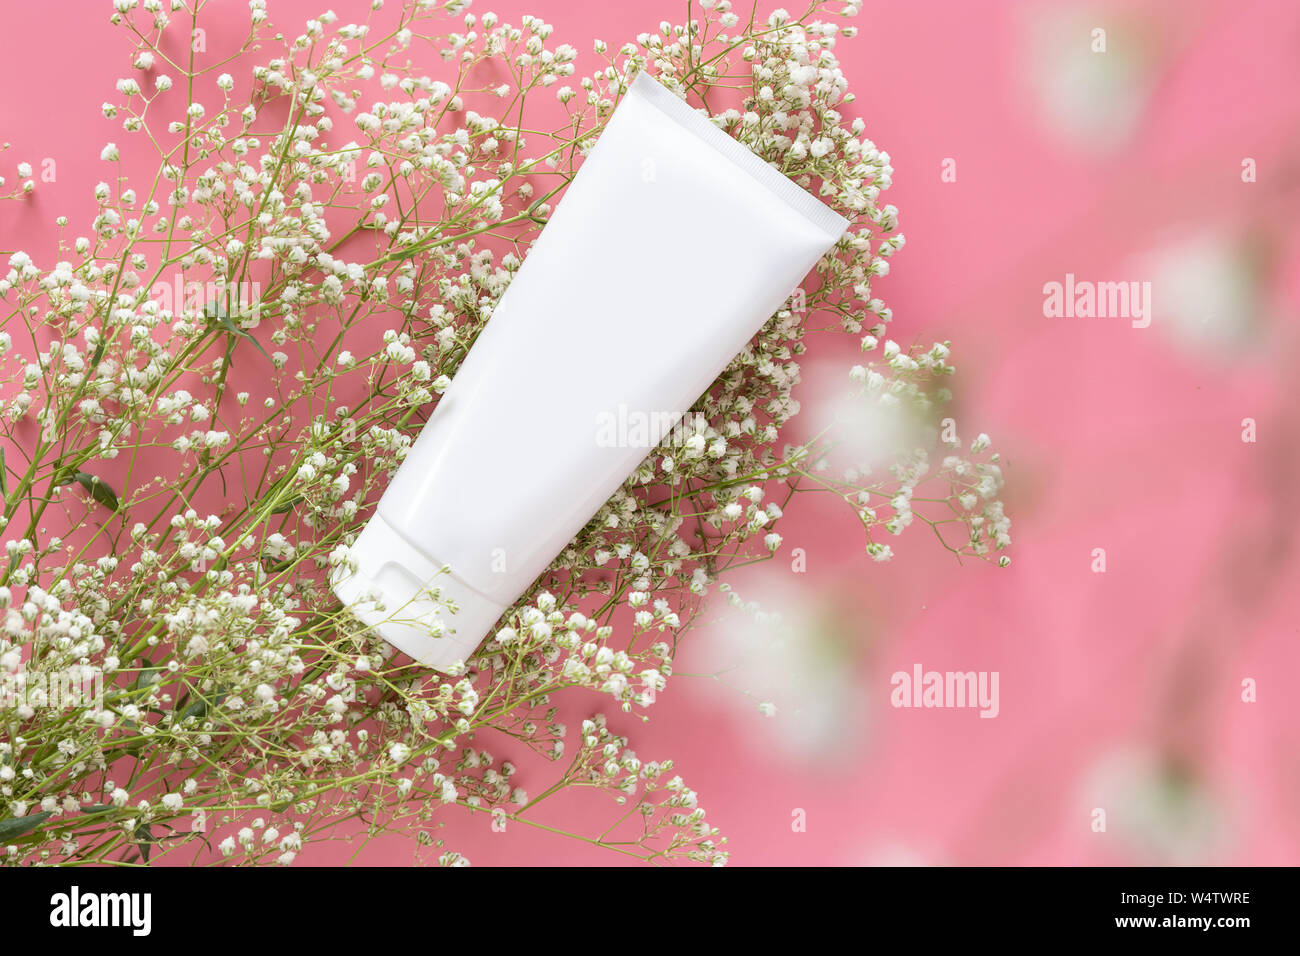 Kosmetischer Natur organische Hautpflege Kosmetik Konzept. Weiße Tube Container mit leeres Etikett für das Branding Verpackung mock up, mit weißen Blumen o Dekorieren Stockfoto